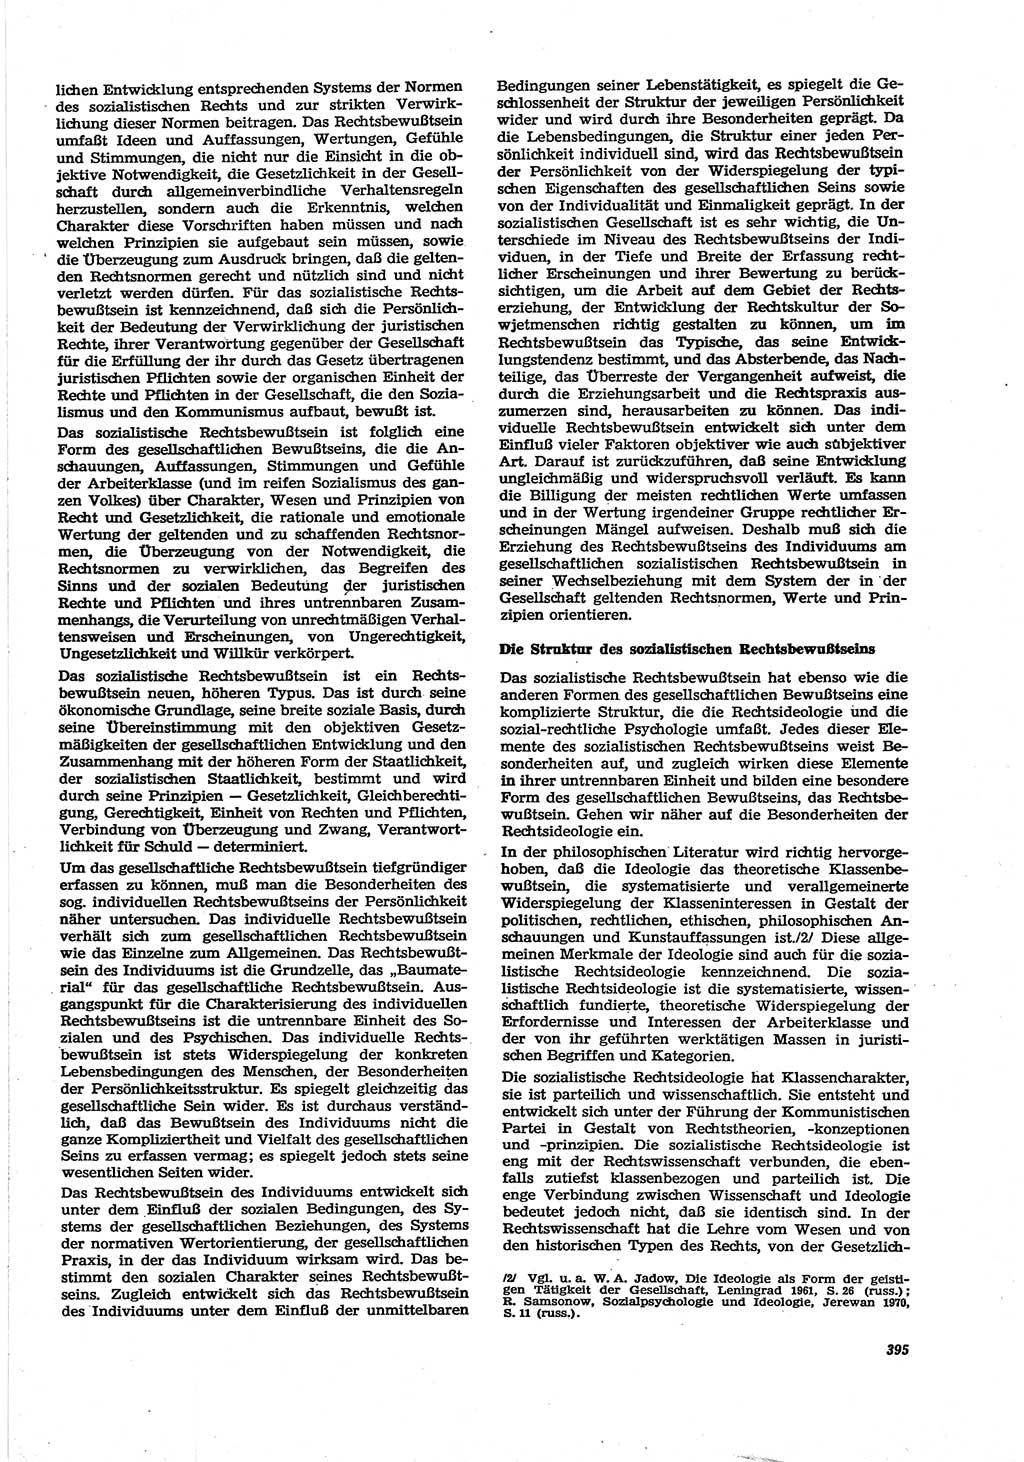 Neue Justiz (NJ), Zeitschrift für Recht und Rechtswissenschaft [Deutsche Demokratische Republik (DDR)], 30. Jahrgang 1976, Seite 395 (NJ DDR 1976, S. 395)